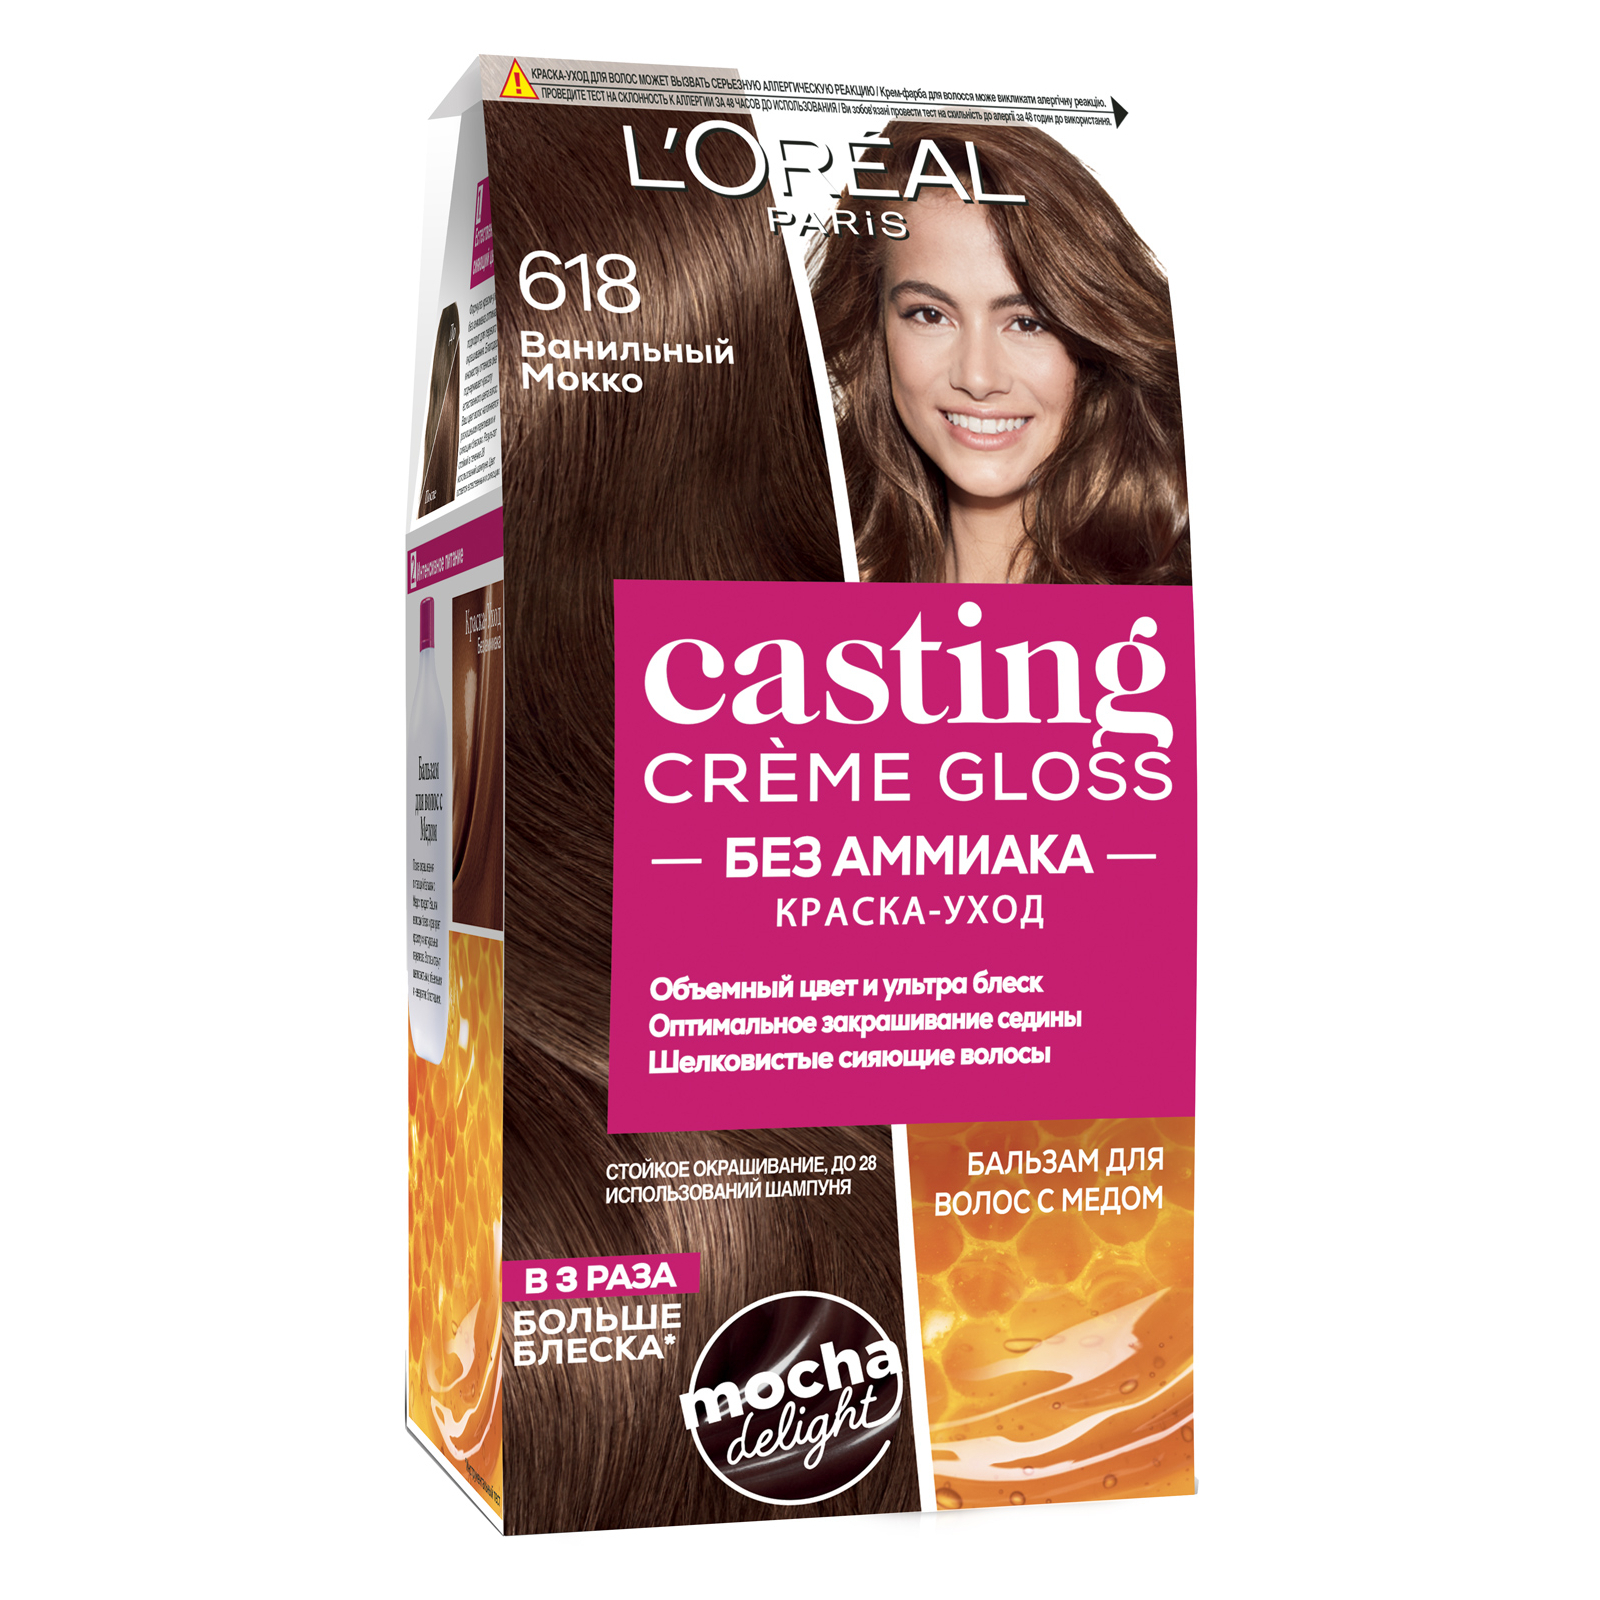 Фарба для волосся L'Oreal Paris Casting Creme Gloss 618 - Ванільний Мокко 120 мл (3600523979882)